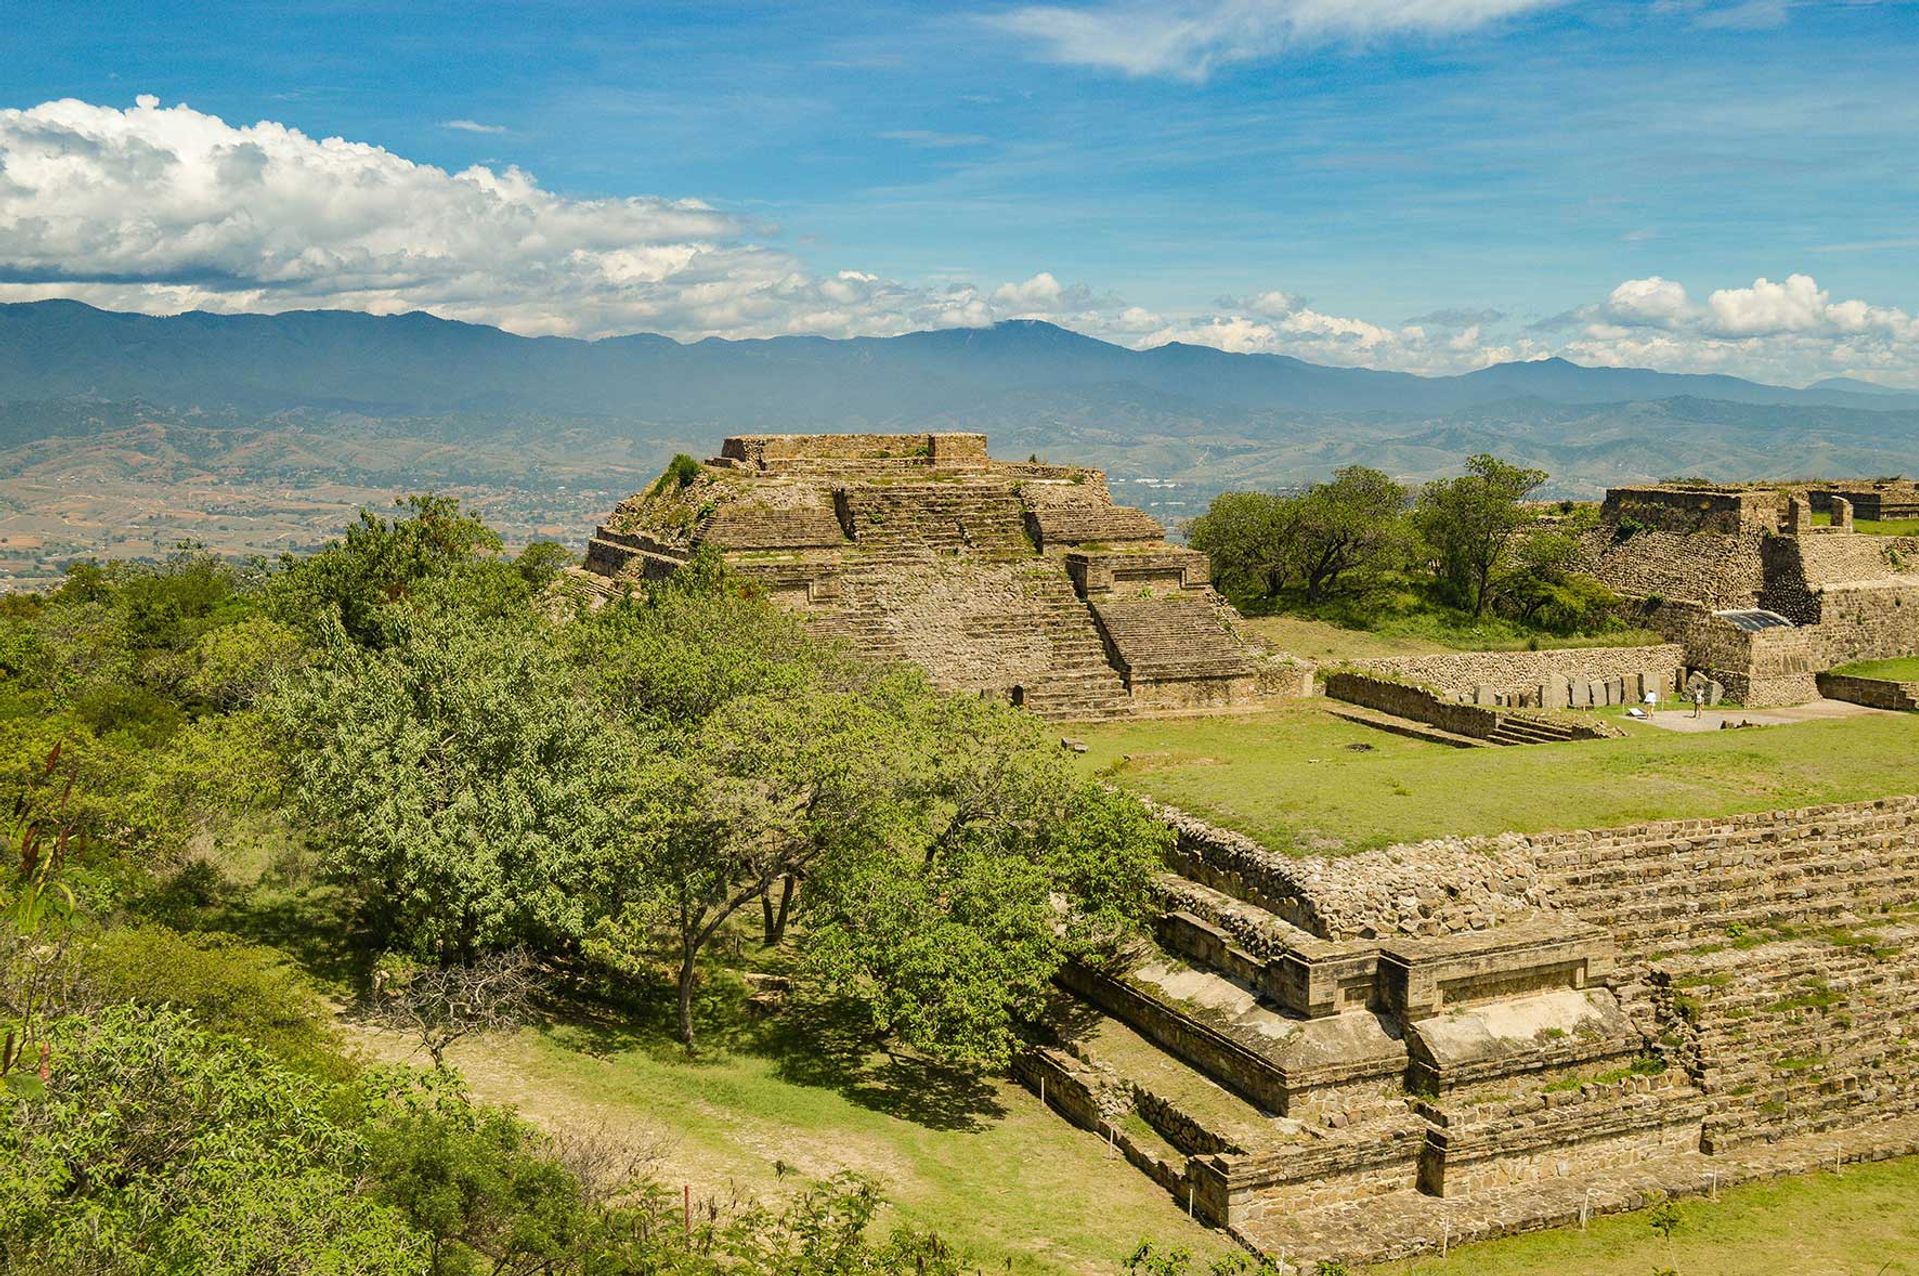 Está previsto un nuevo museo para el antiguo complejo maya de Chichén Itzá, el sitio arqueológico más visitado de México.